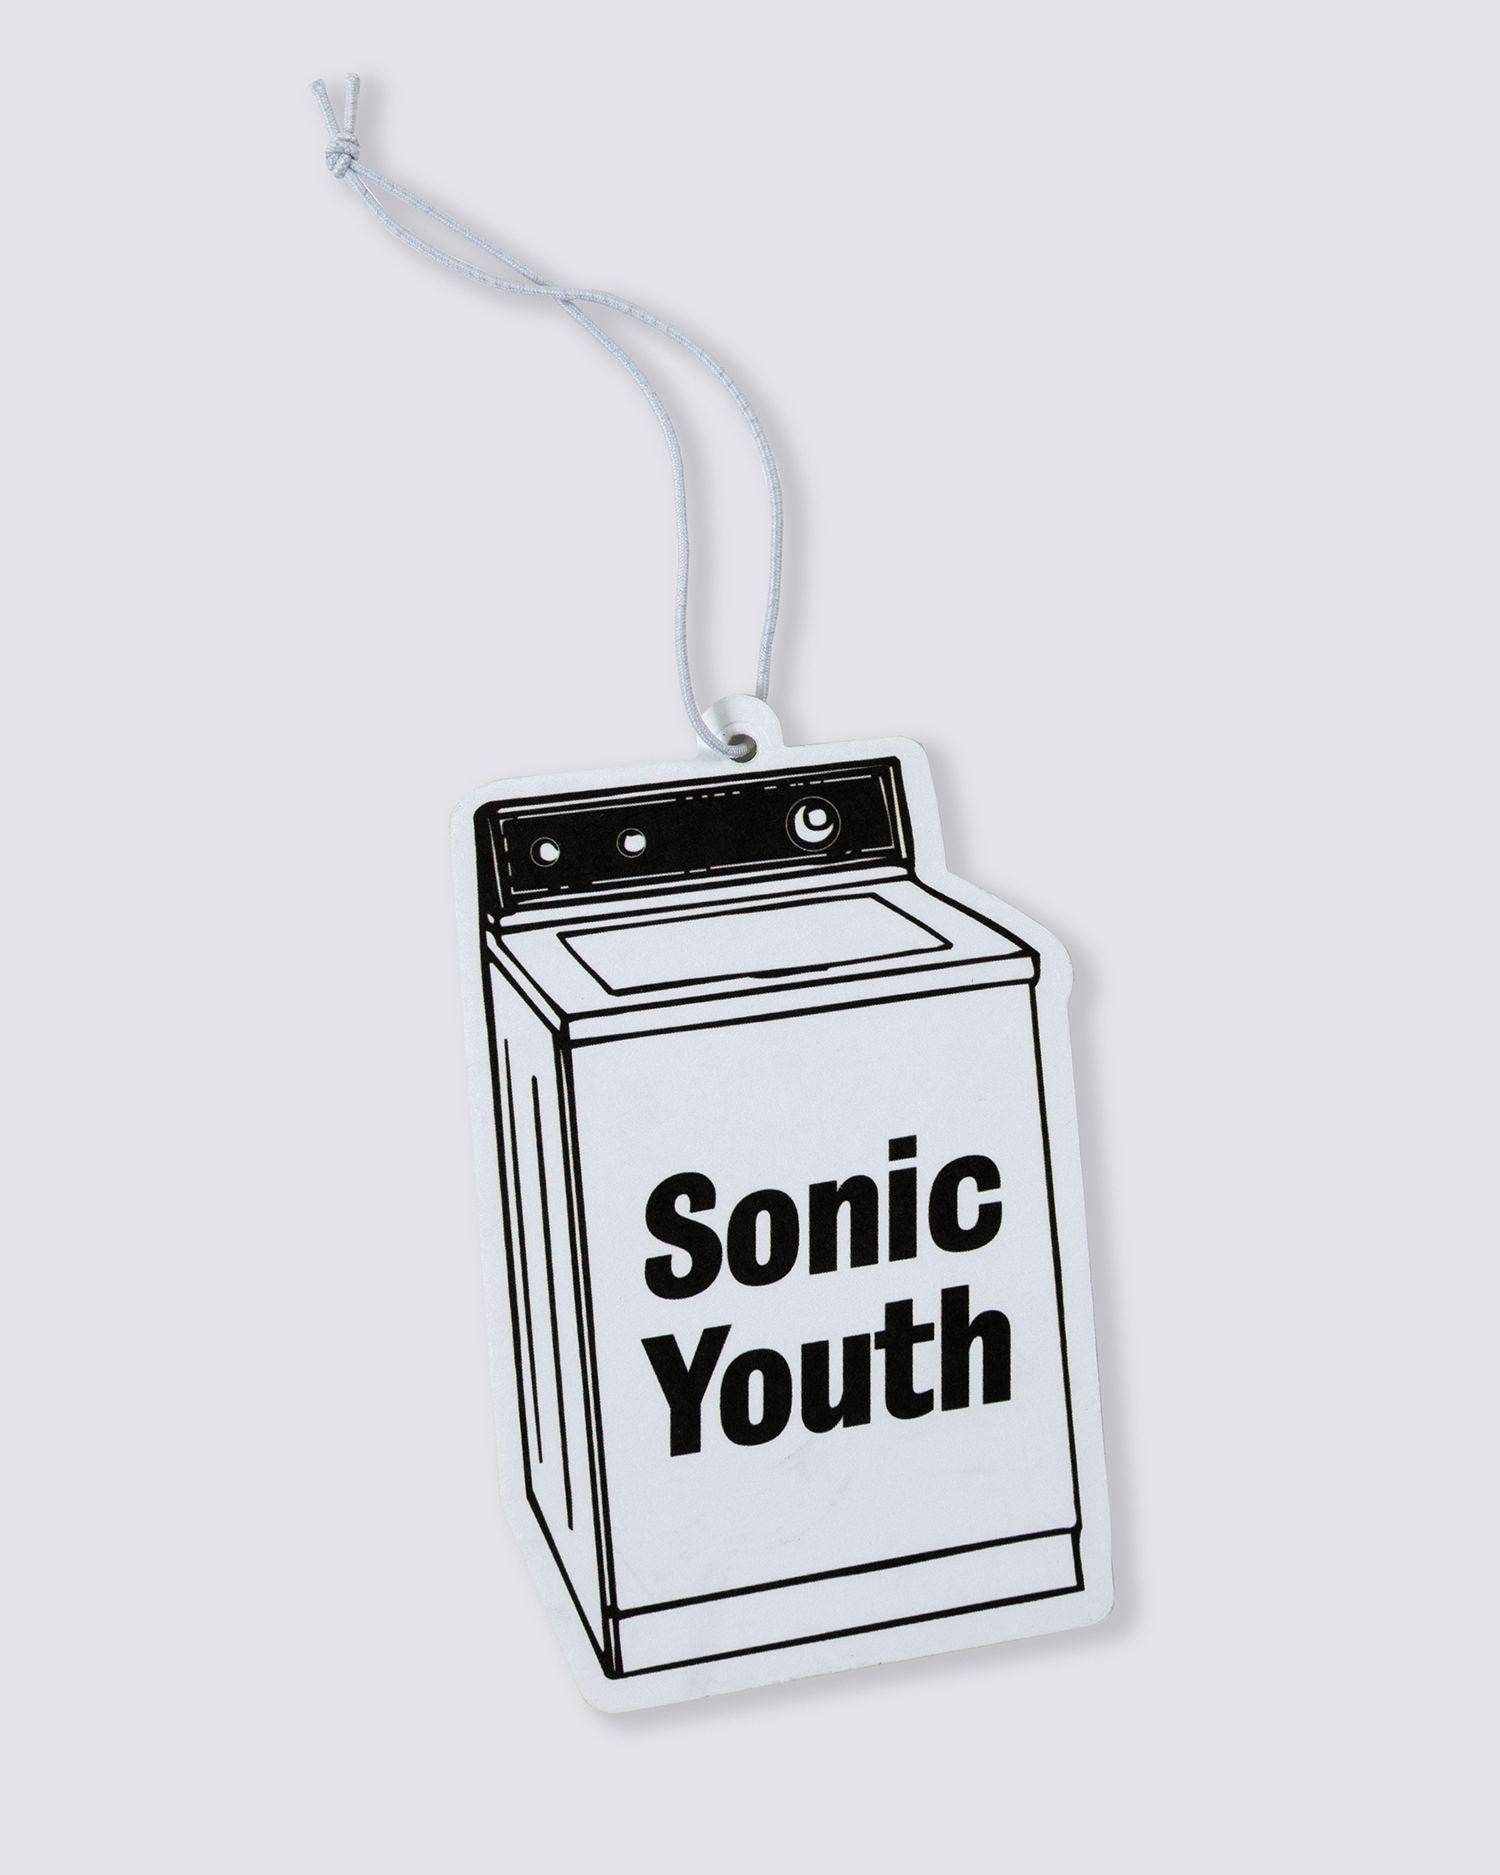 Sonic Youth Washing Machine Air Freshener - White